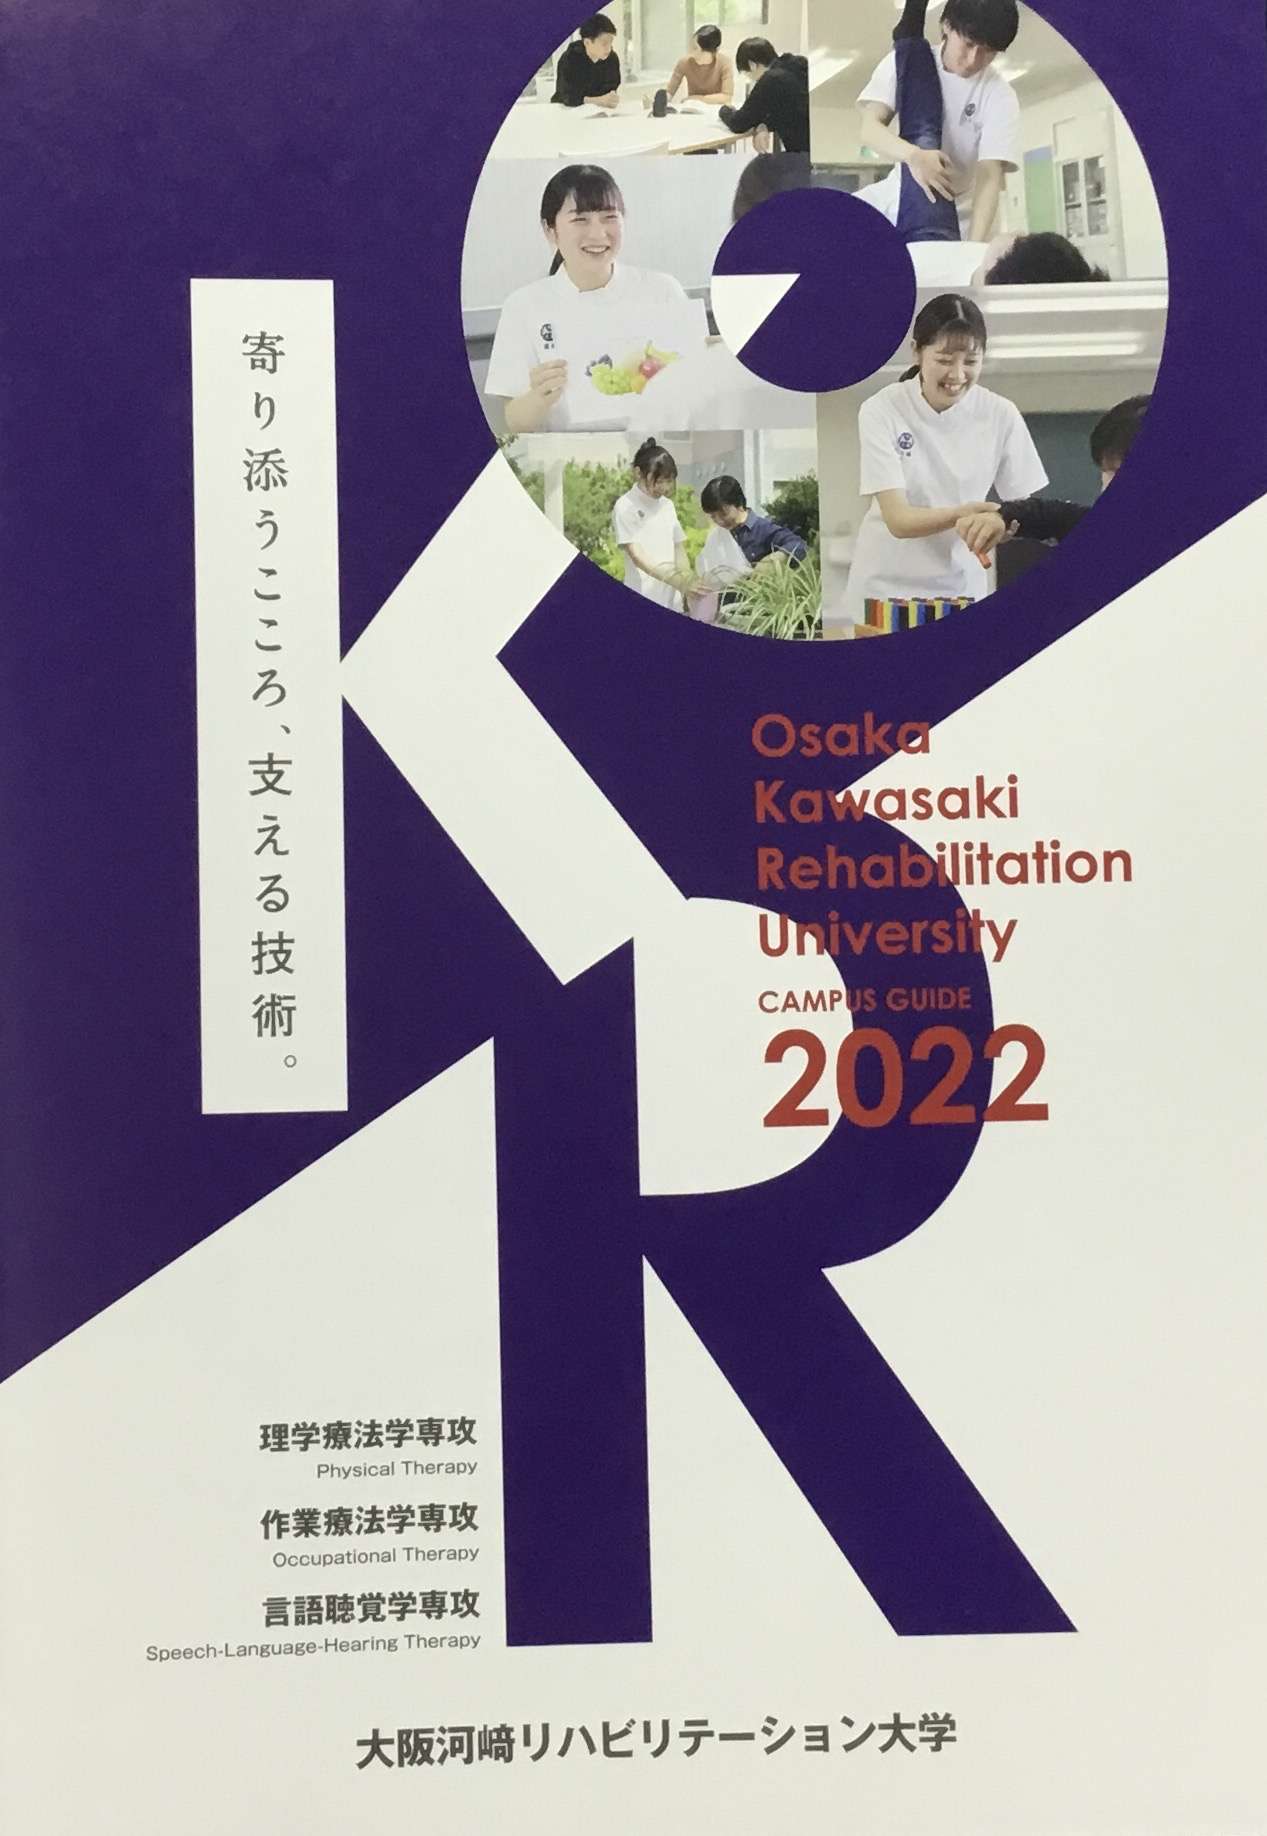 大阪河崎リハビリテーション大学のパンフレットに掲載していただきました